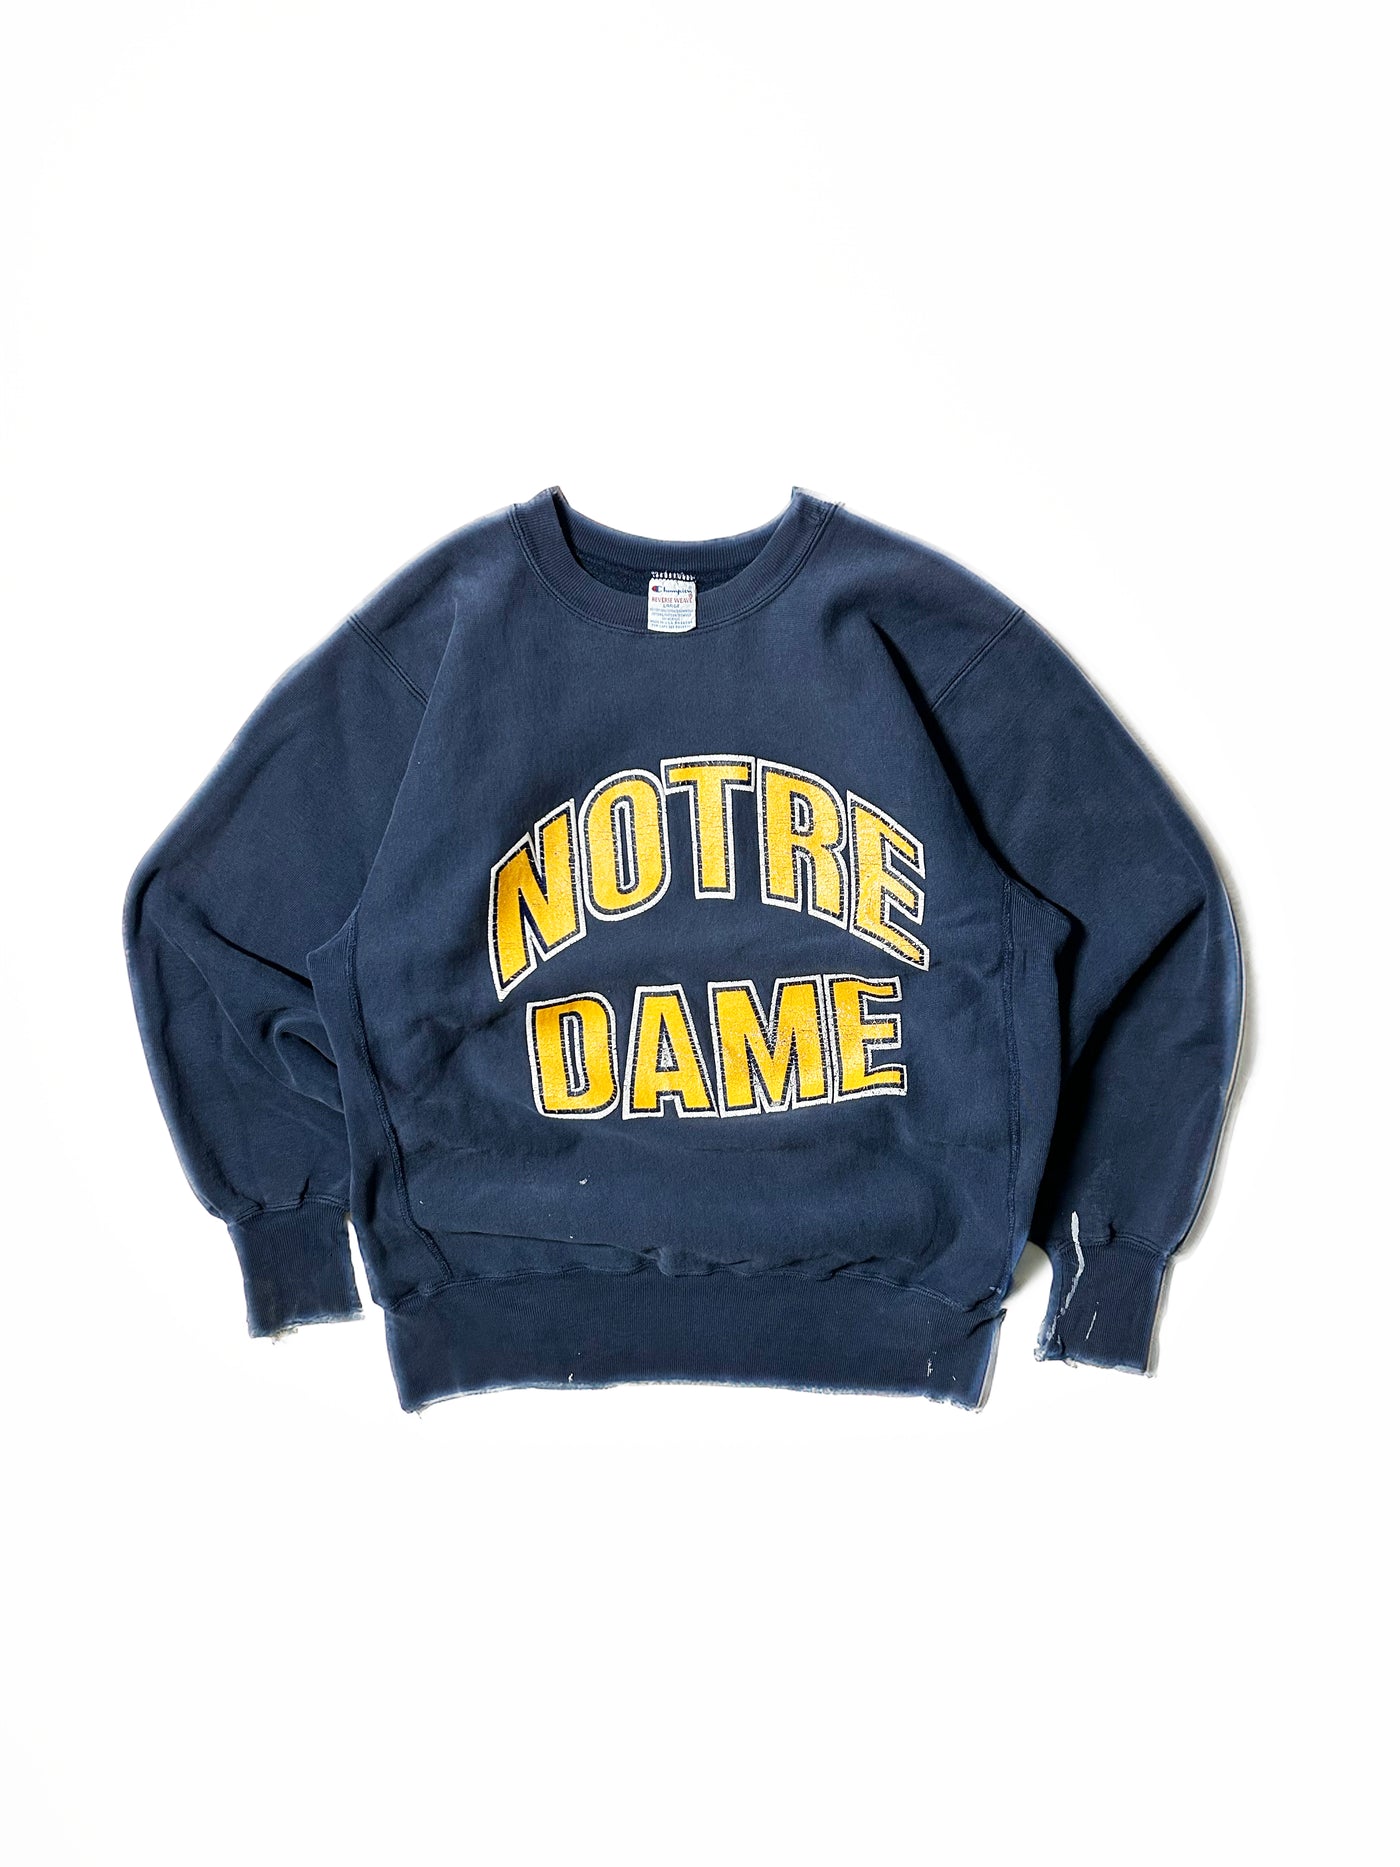 Vintage 90s Champion Reverse Weave Notre Dame Crewneck